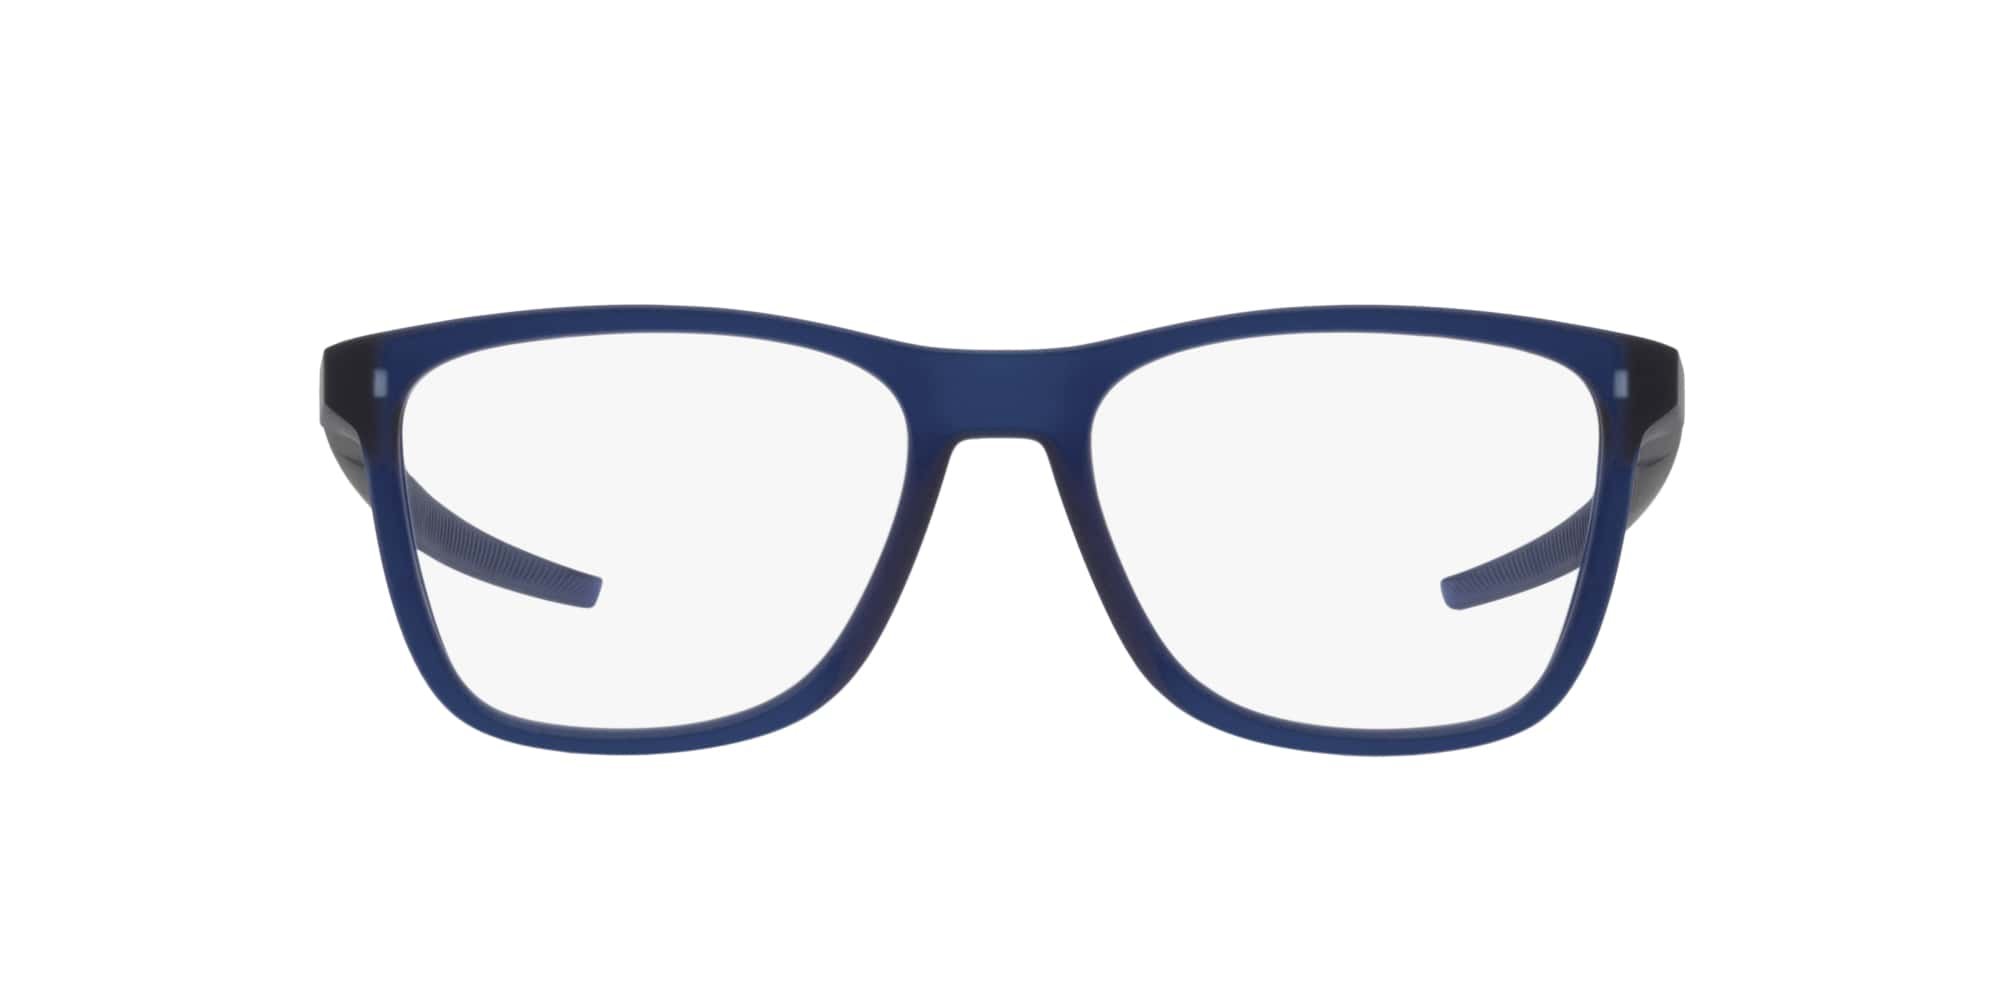 Das Bild zeigt die Korrektionsbrille OX8163 816308 von der Marke Oakley  in  blau transluzent.